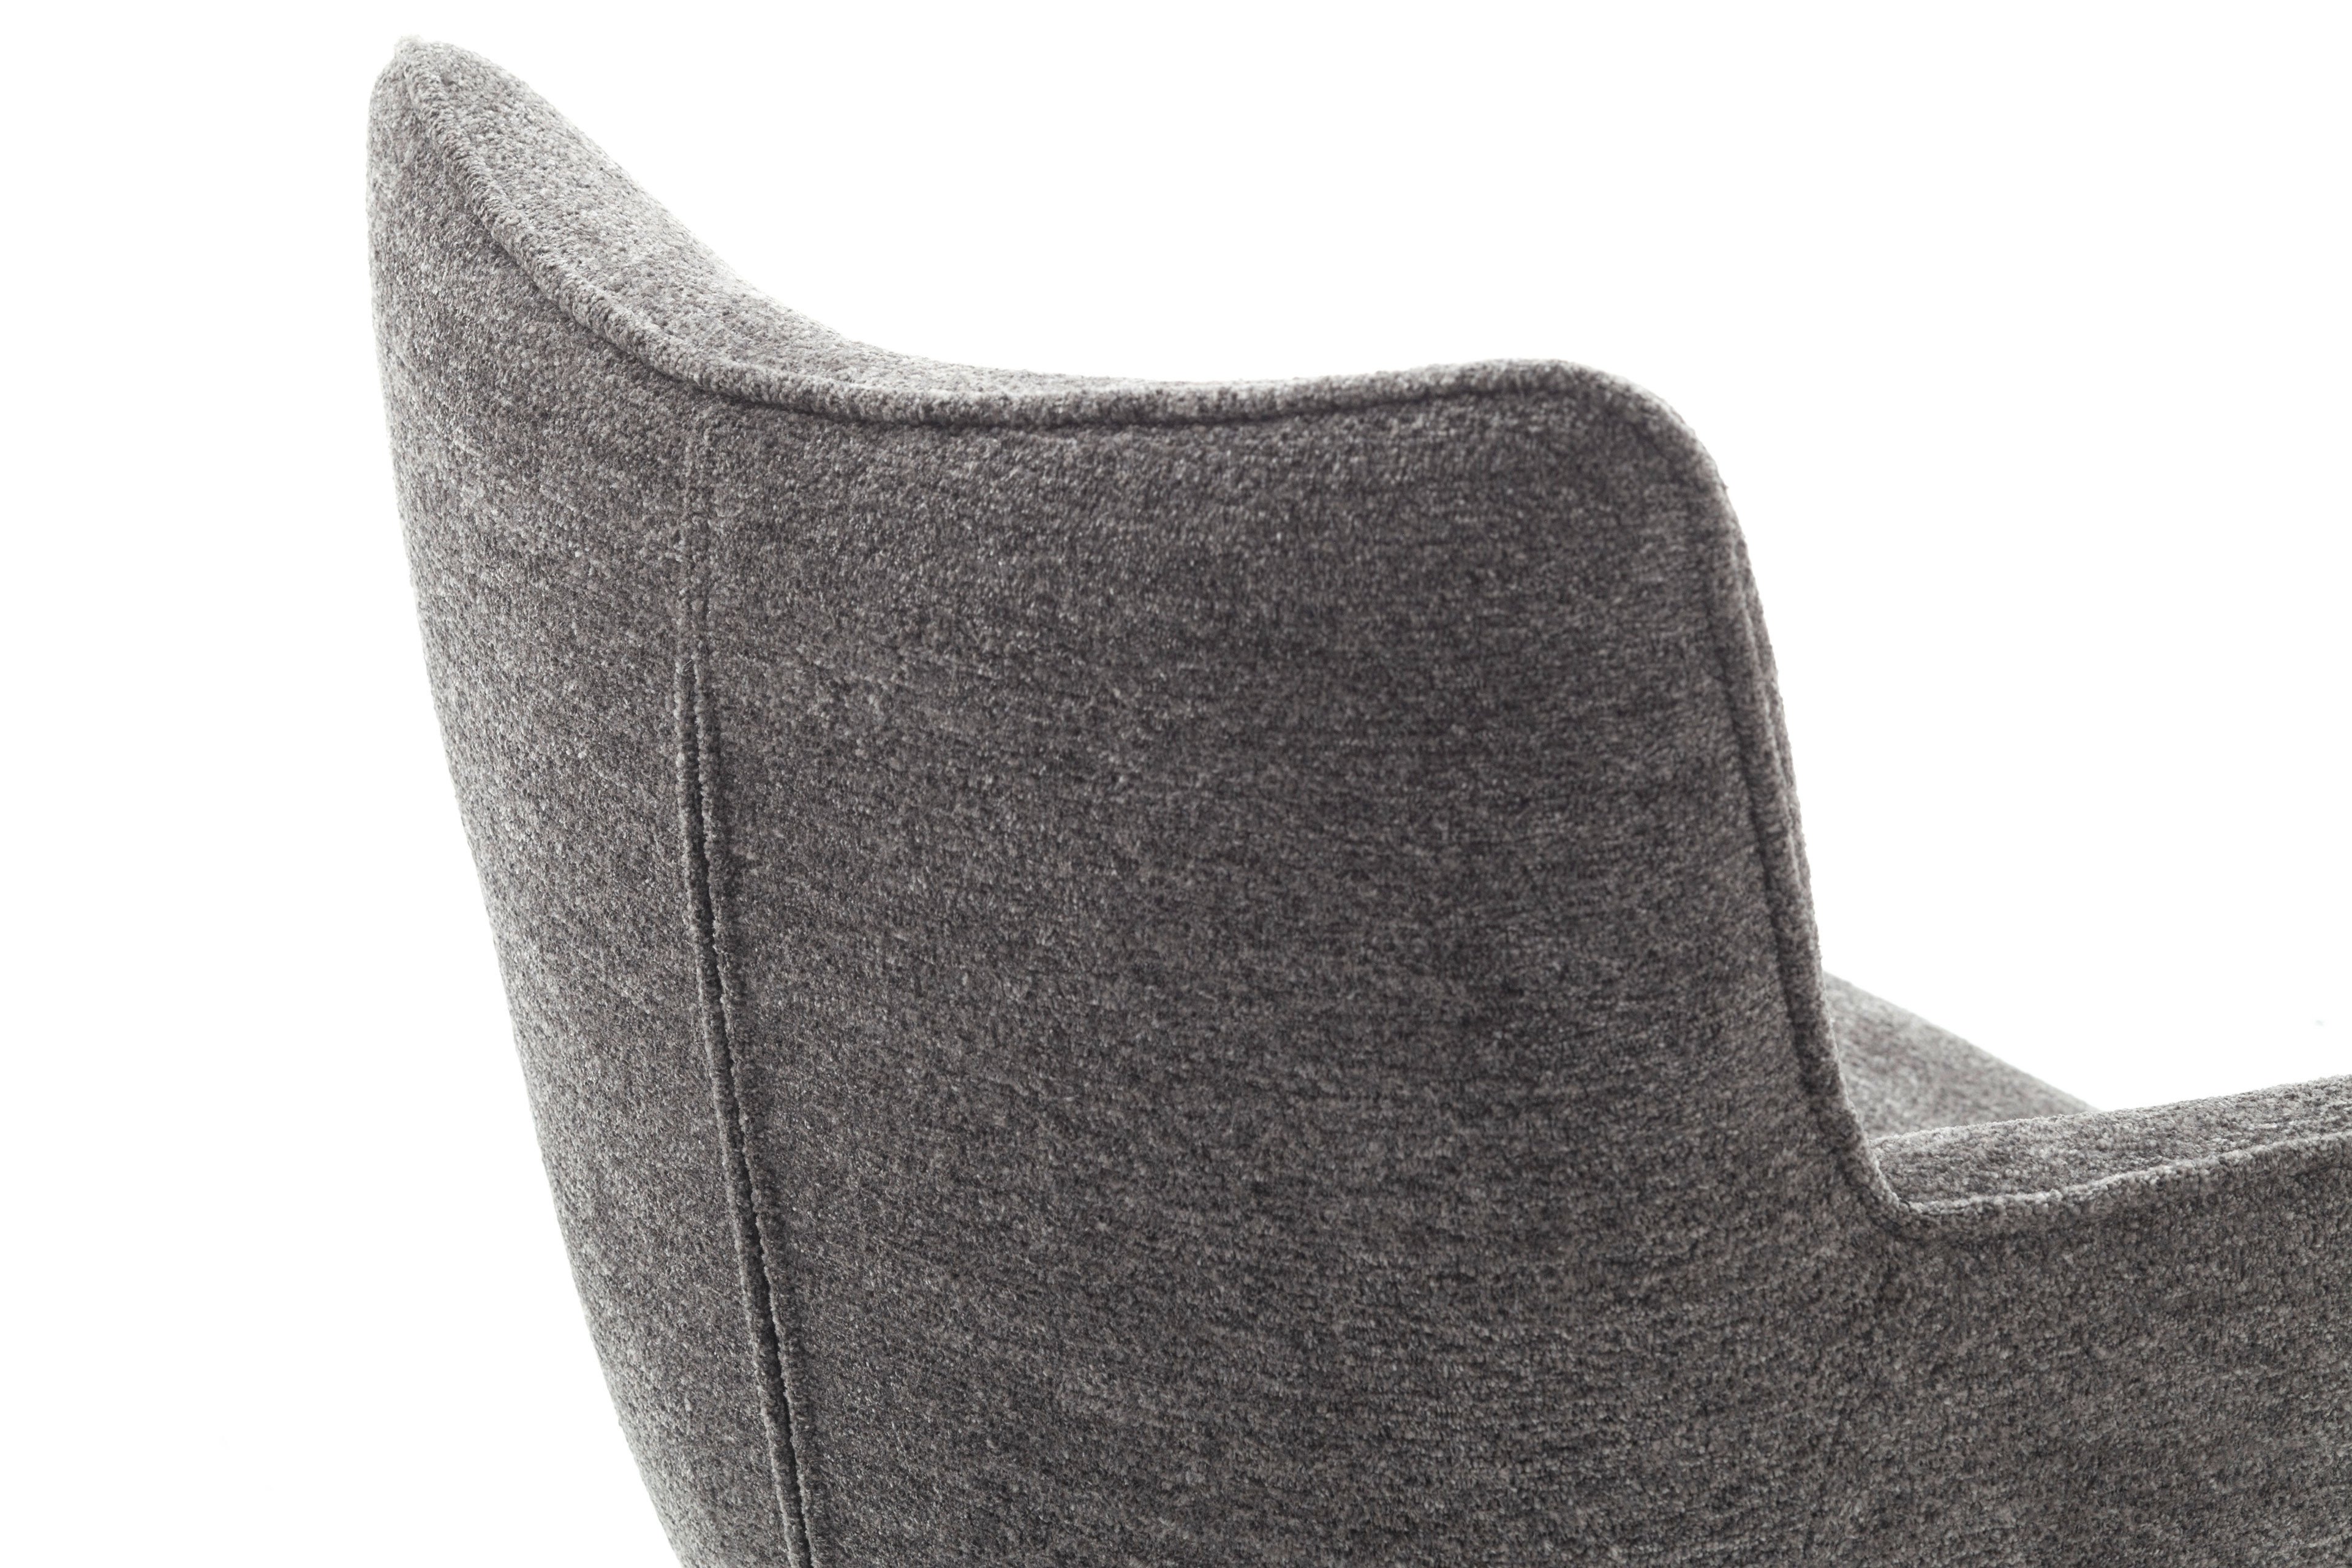 MCA furniture Stuhl Limone 1 mit ovalem Gestell | Möbel Letz - Ihr  Online-Shop